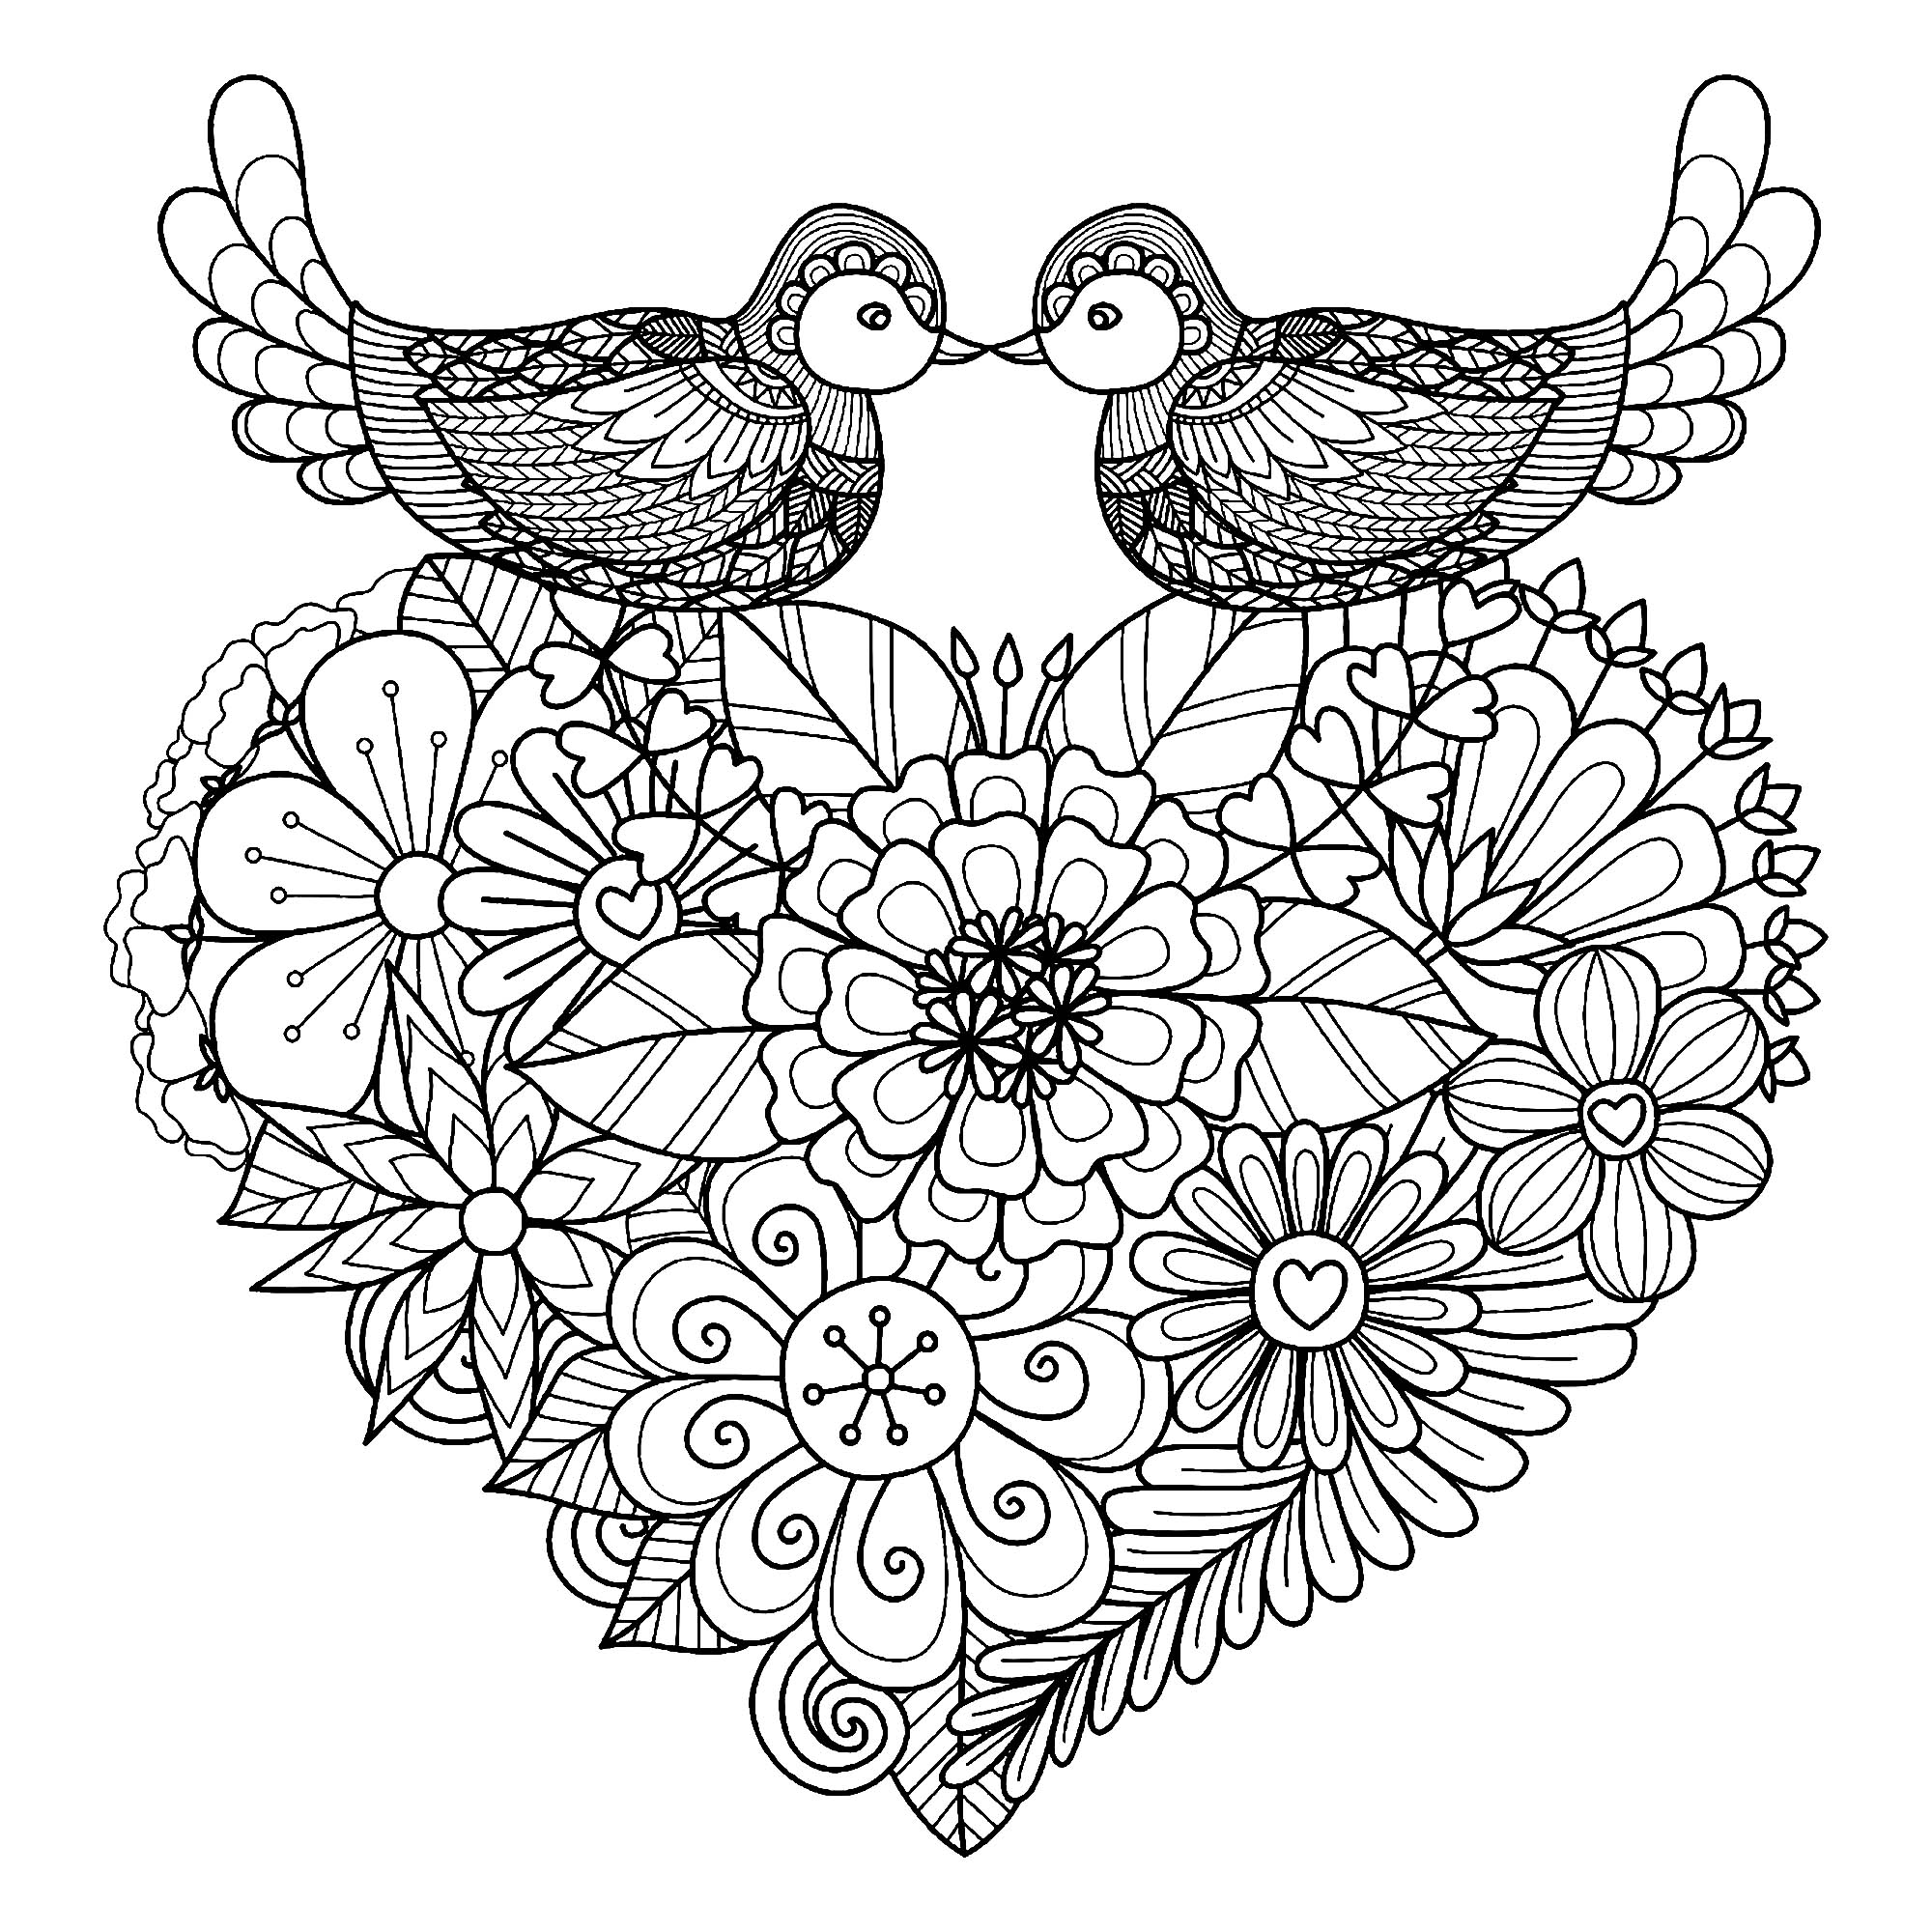 Colorare questi due uccelli simmetrici che si posano su un cuore pieno di fiori originali